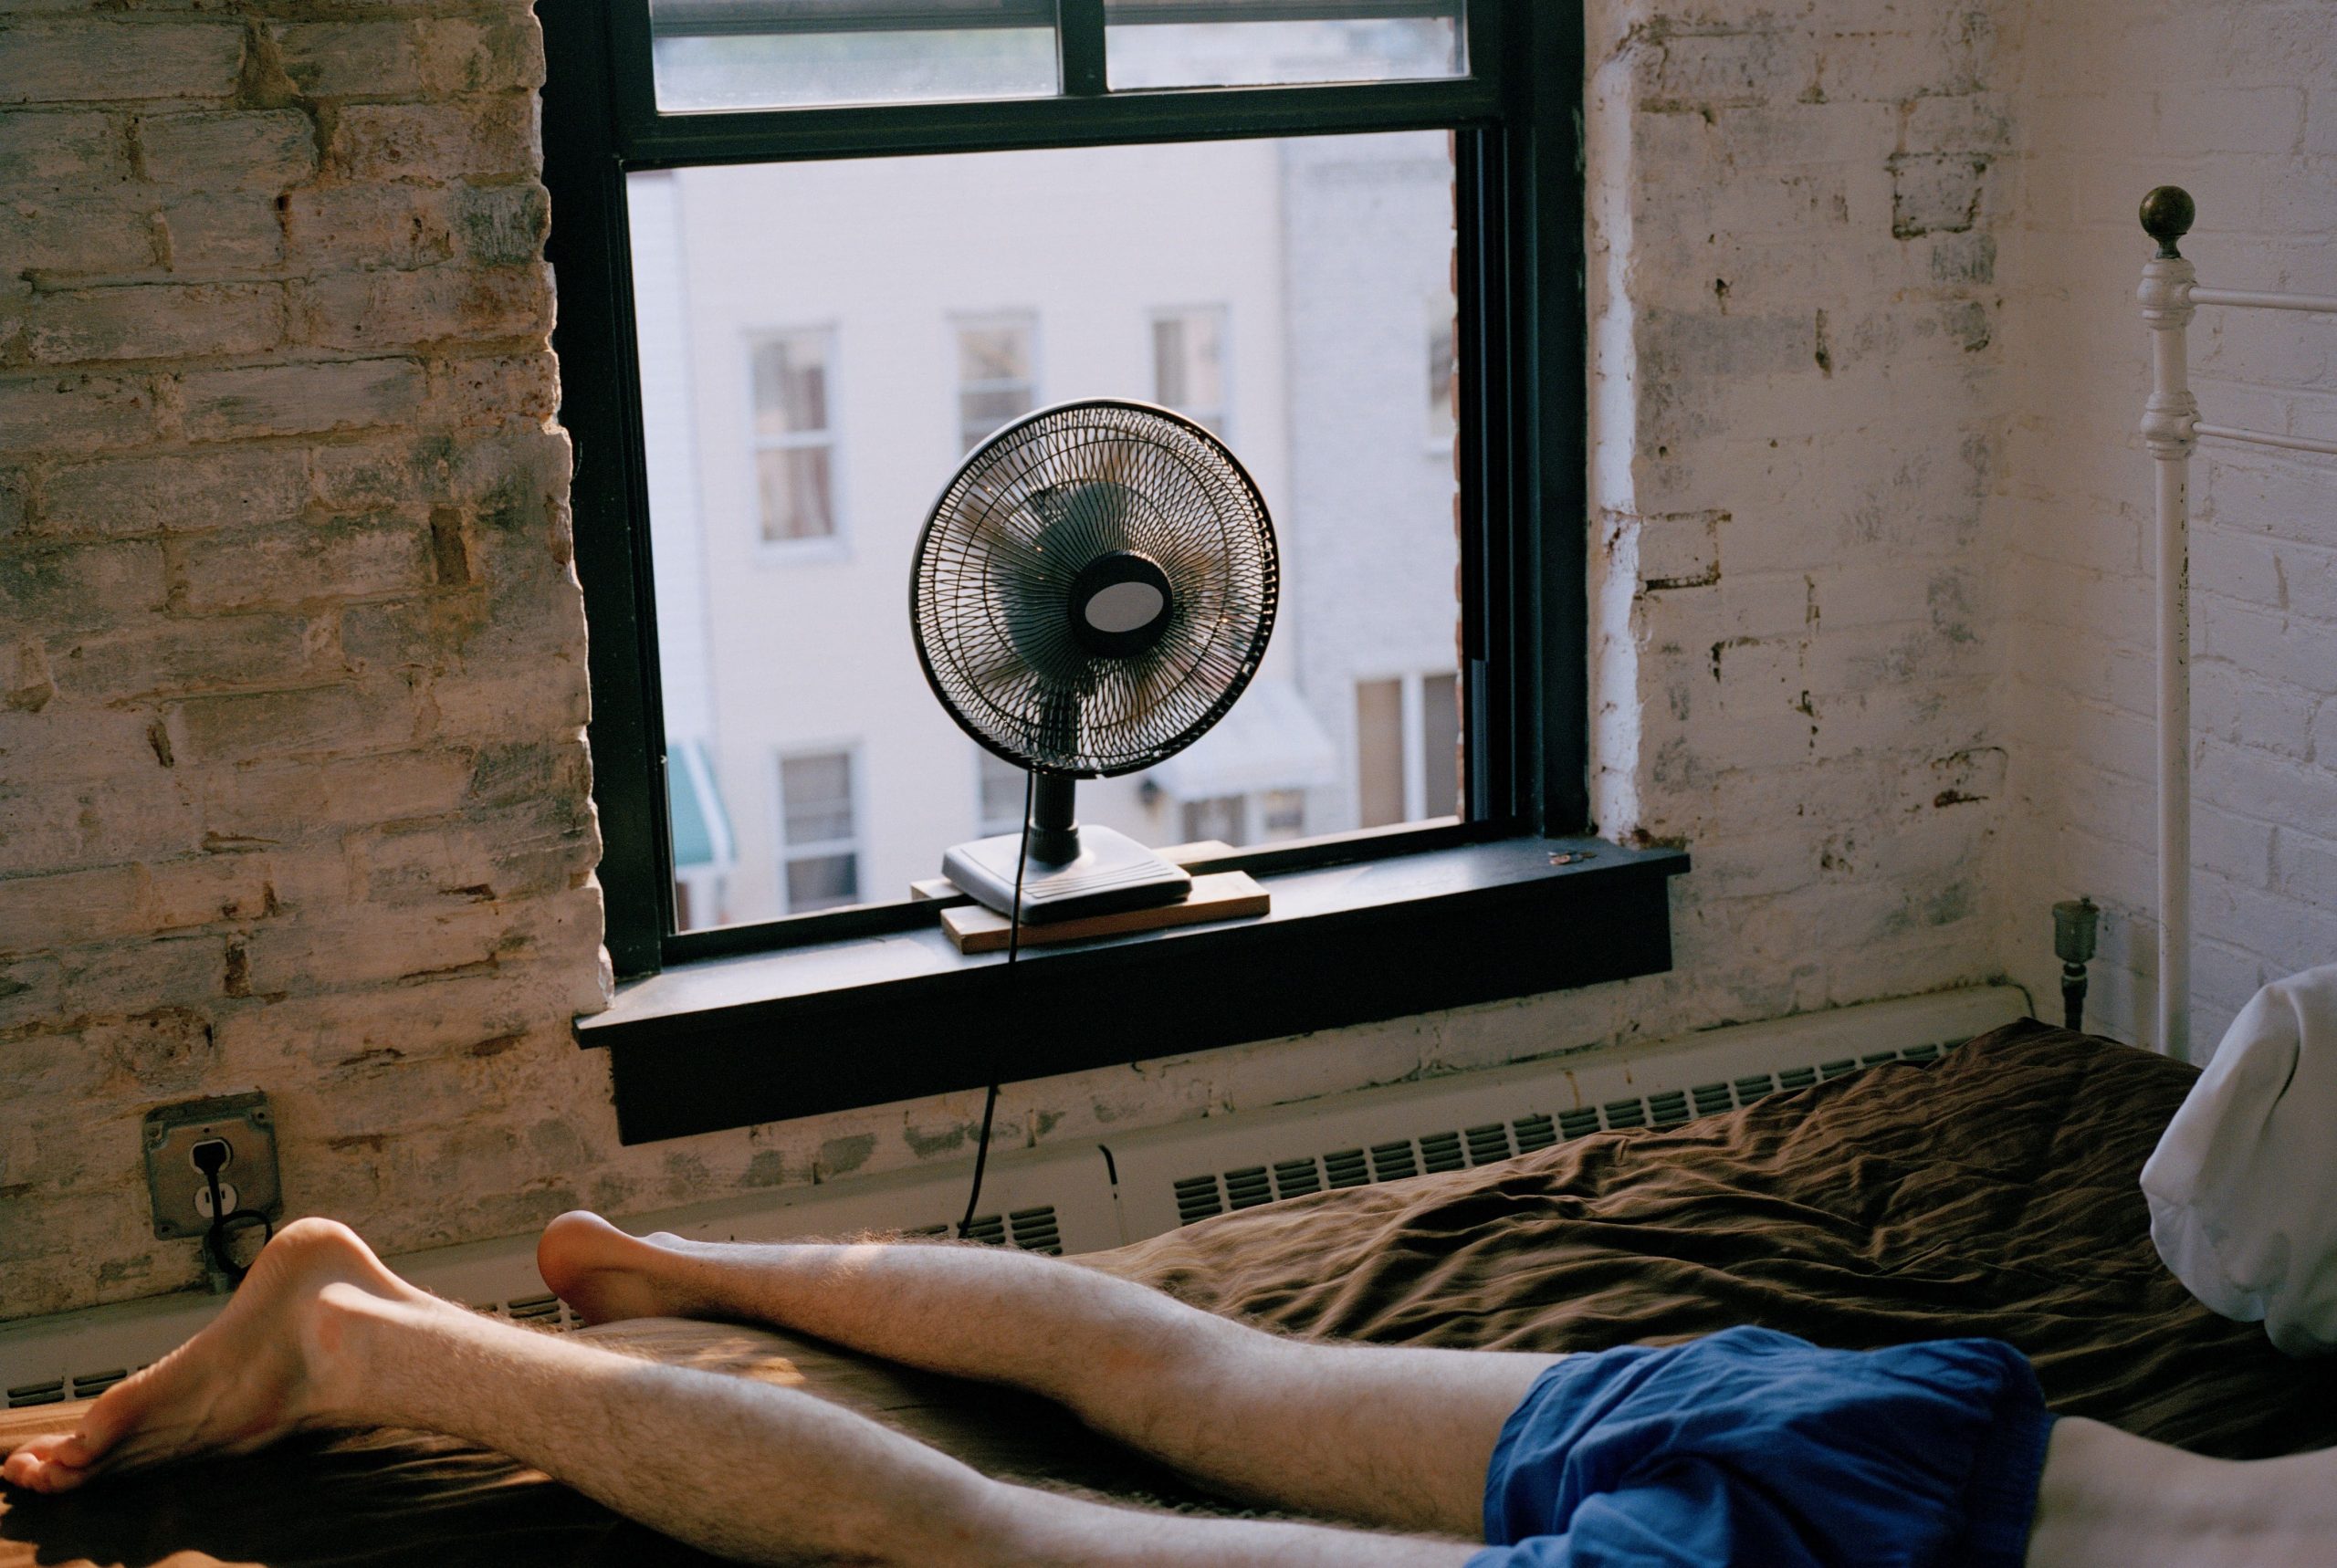 Un chico tumbado en la cama mientras tiene el ventilador encendido.